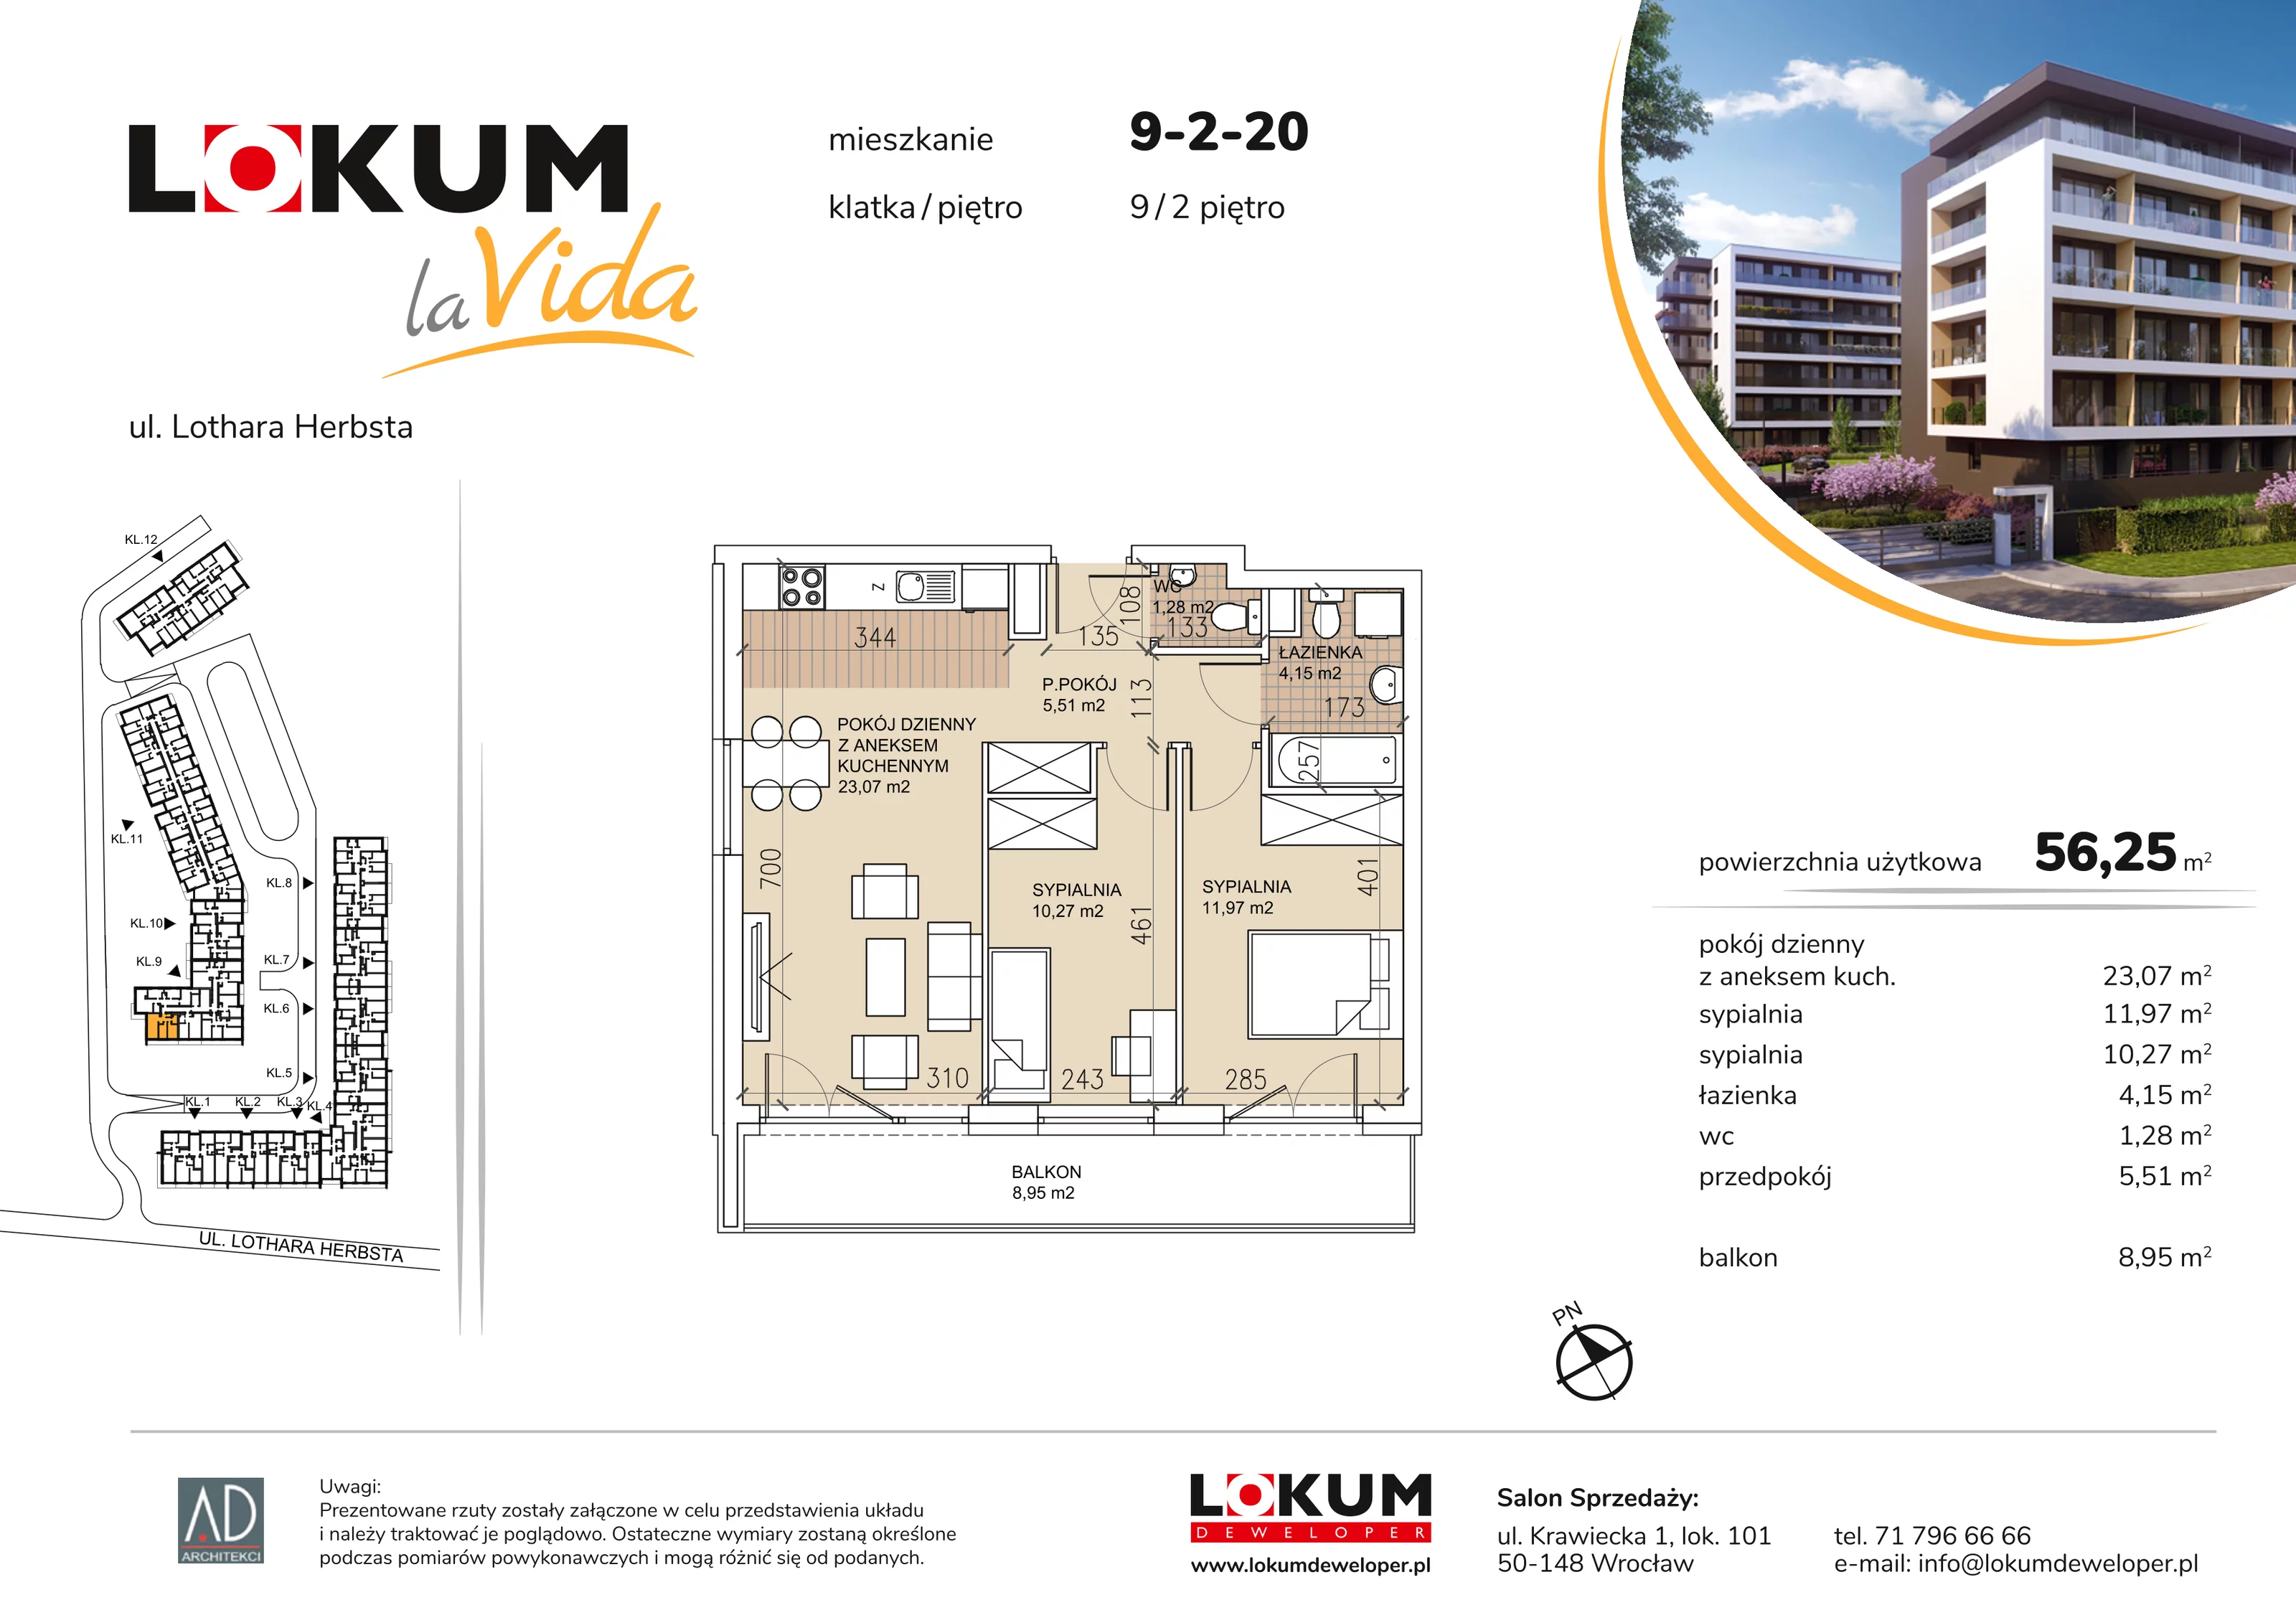 Mieszkanie 56,25 m², piętro 2, oferta nr 9-2-20, Lokum la Vida, Wrocław, Sołtysowice, ul. Lothara Herbsta